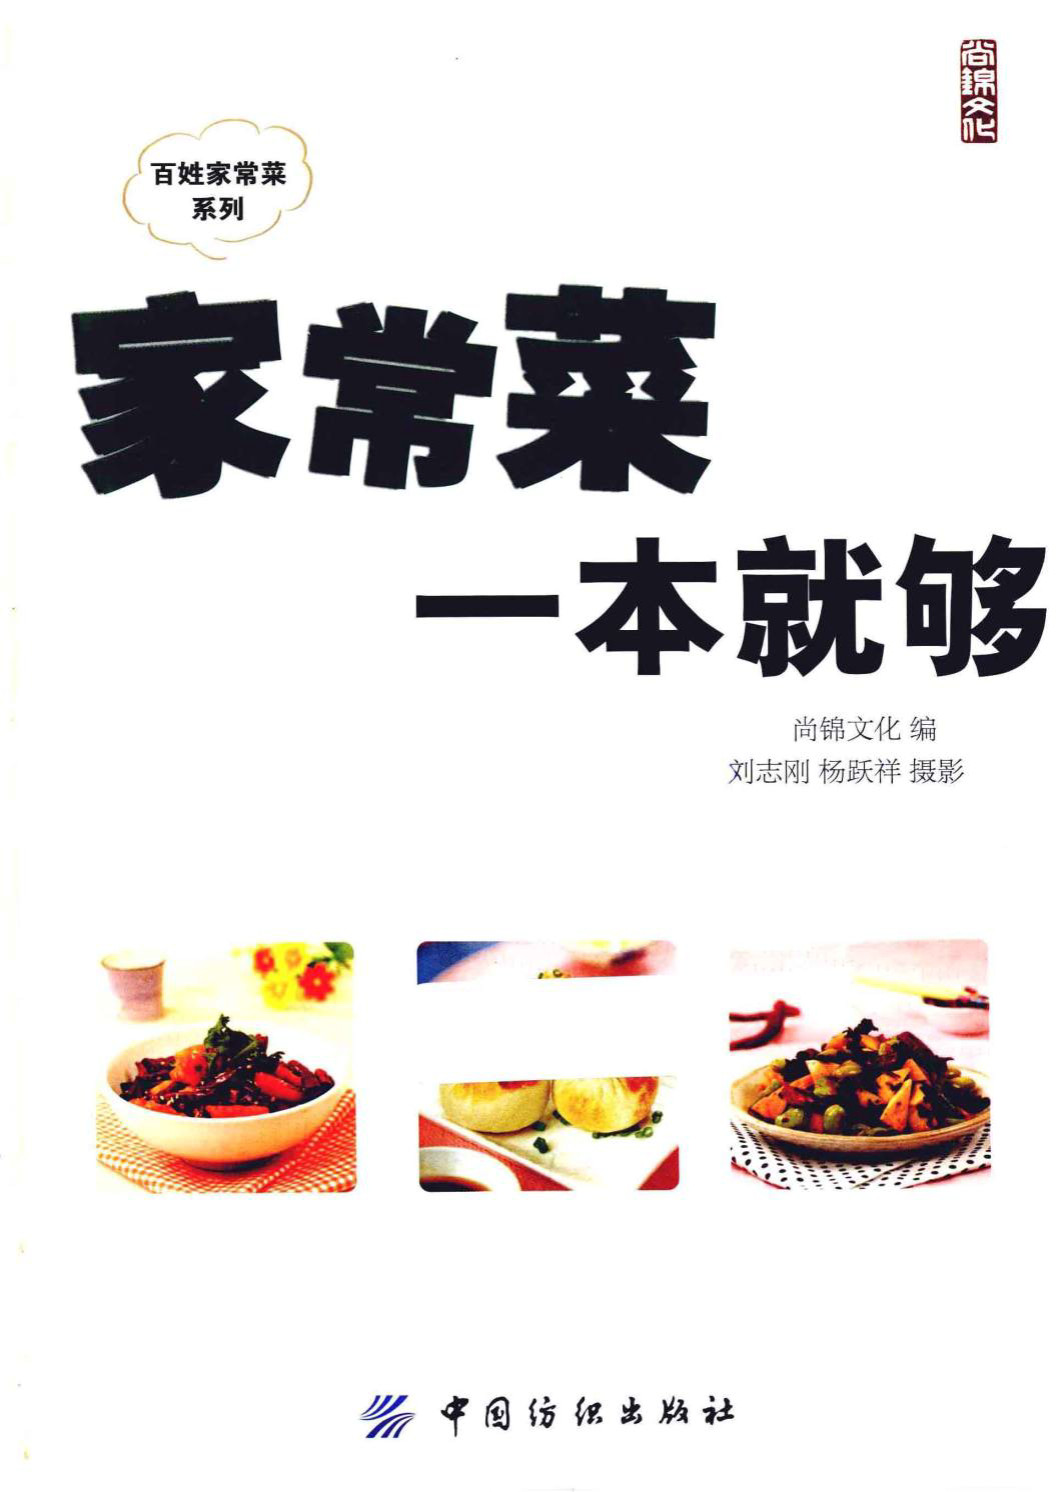 《家常菜一本就够》 尚锦文化 全彩版 pdf电子书下载